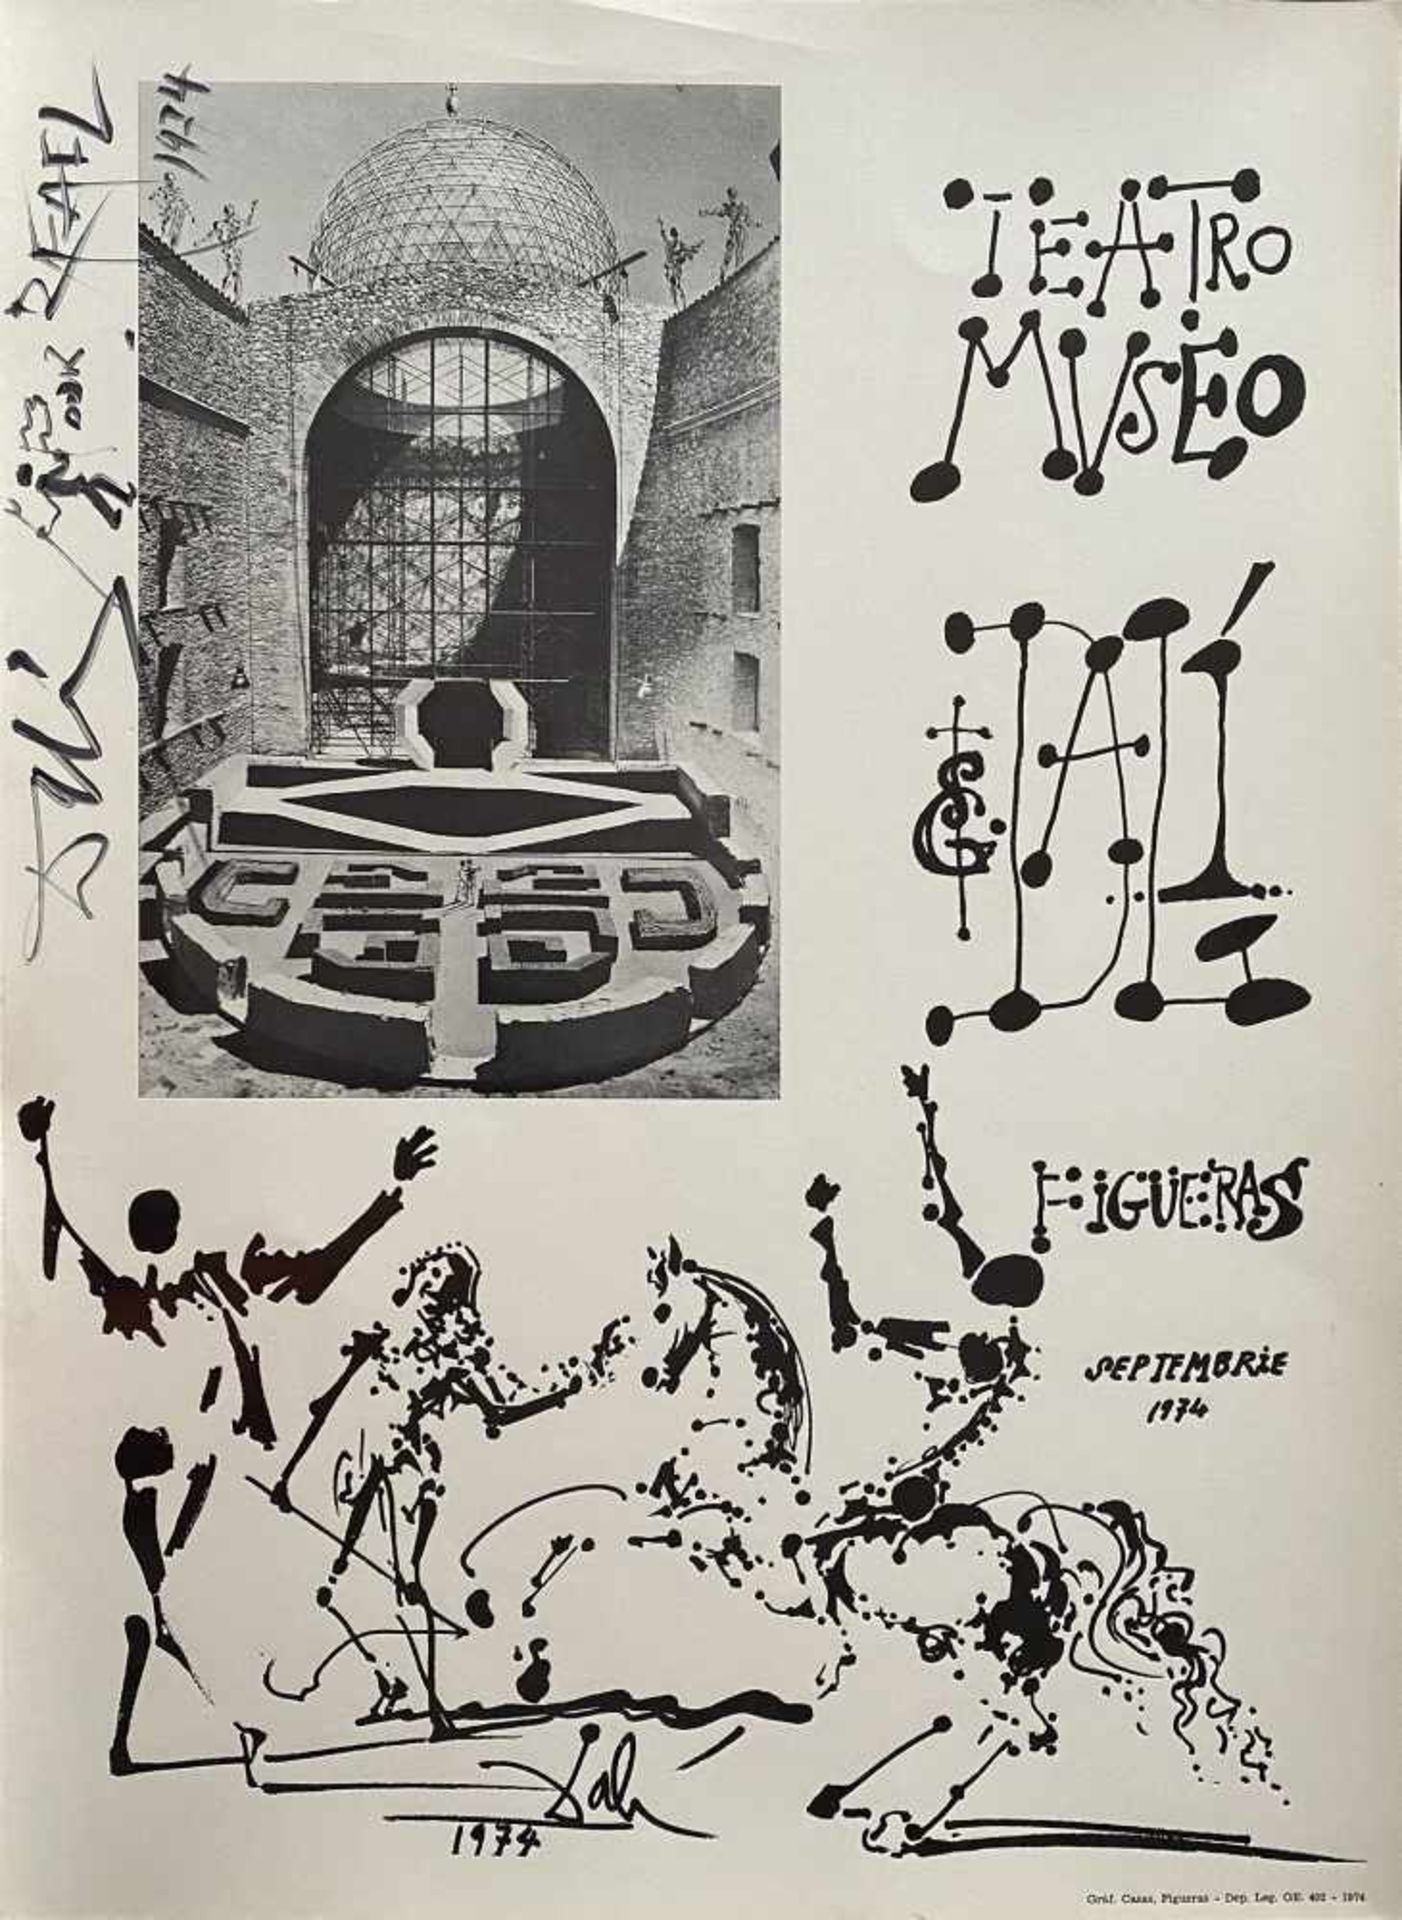 Salvador Dalí (Figueres, 1904 - 1989) Salvador Dalí (Figueres, 1904 - 1989) Felt-tip drawing. Signed